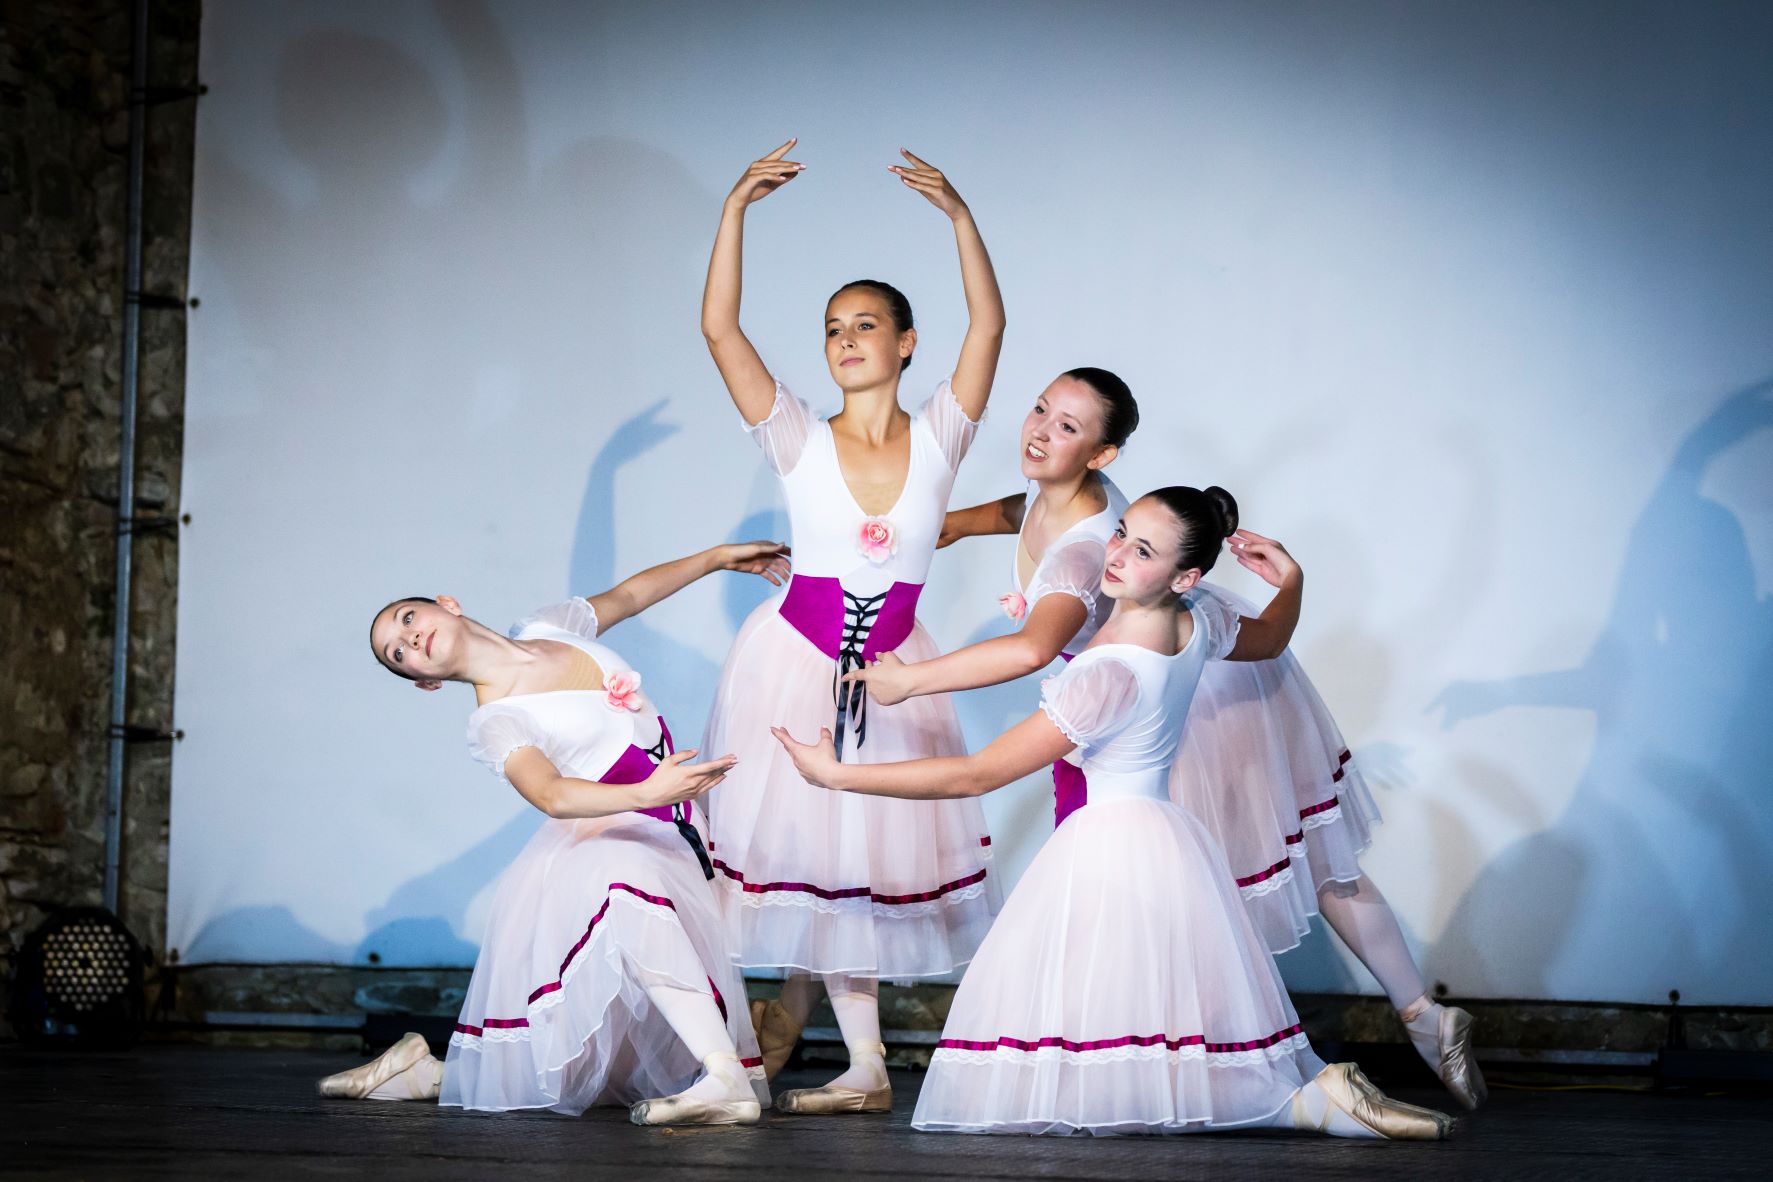 Le allieve della Freestyle Dance School di Bibbiena arrivano terze assolute al concorso internazionale Opus Ballet